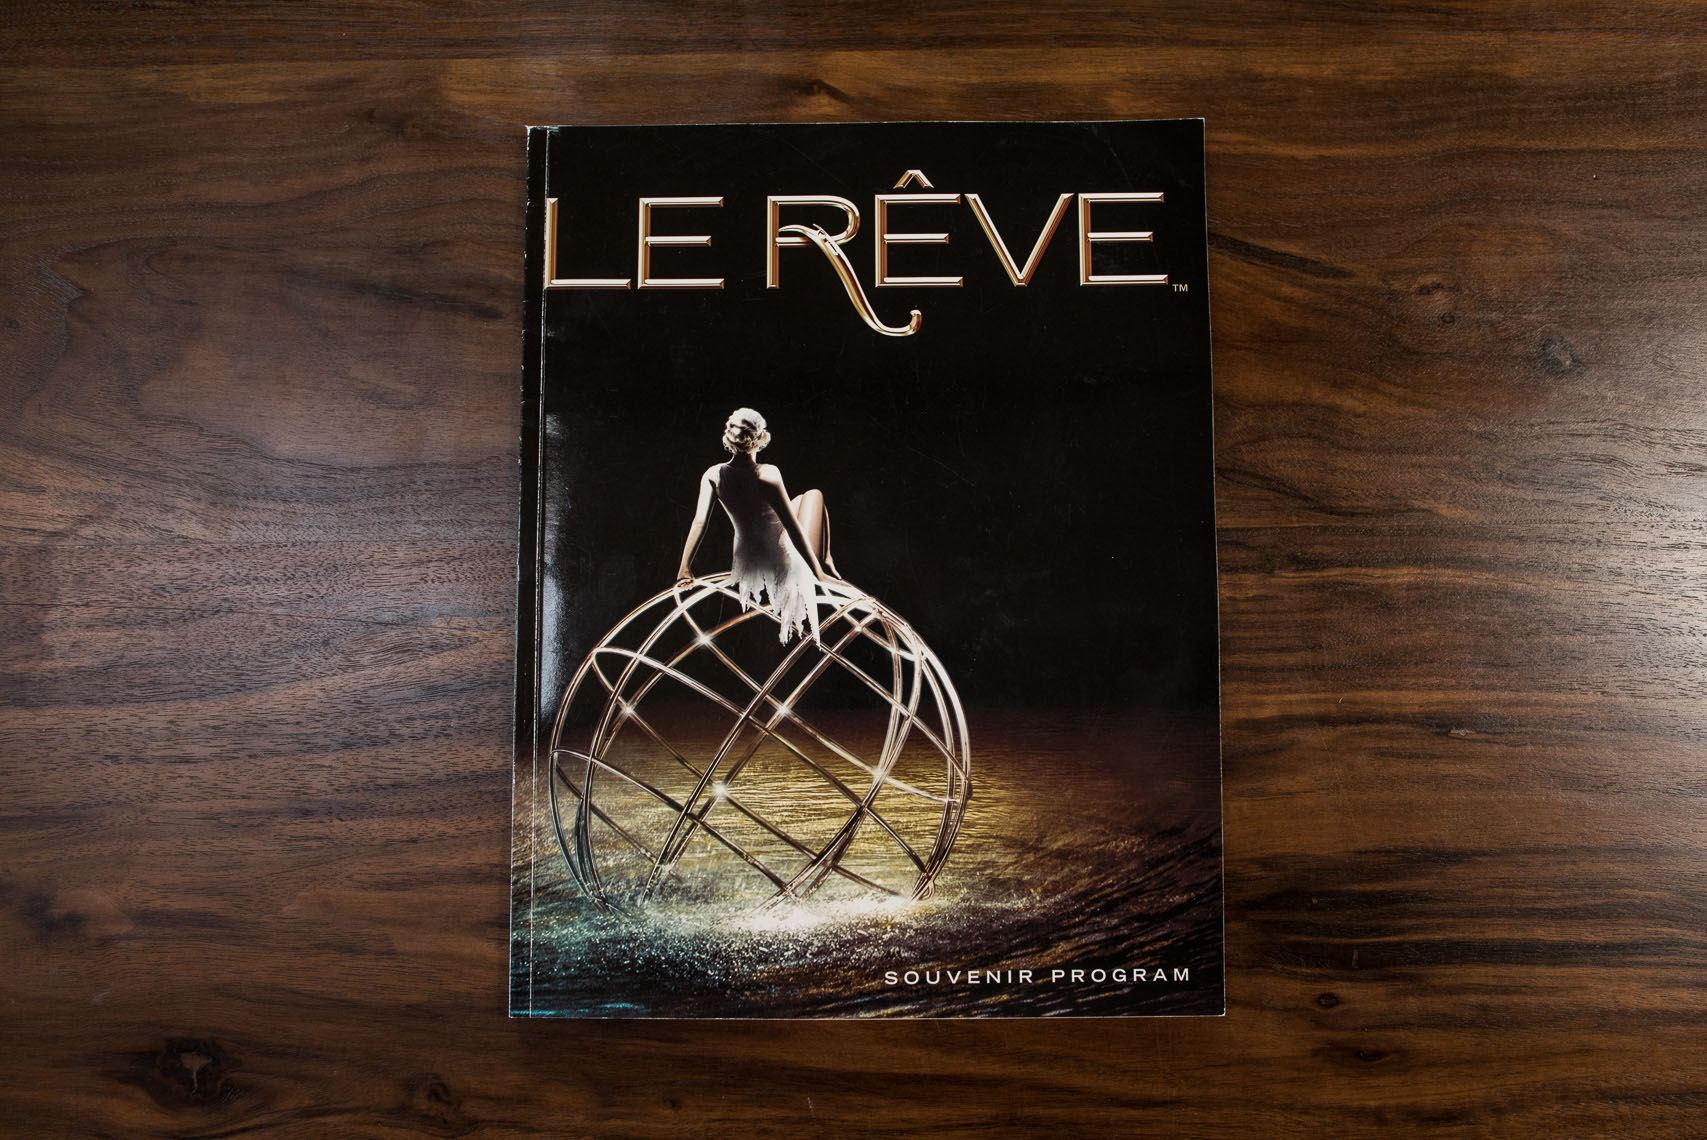 Souvenir program for Le Reve the show at the Wynn Las Vegas